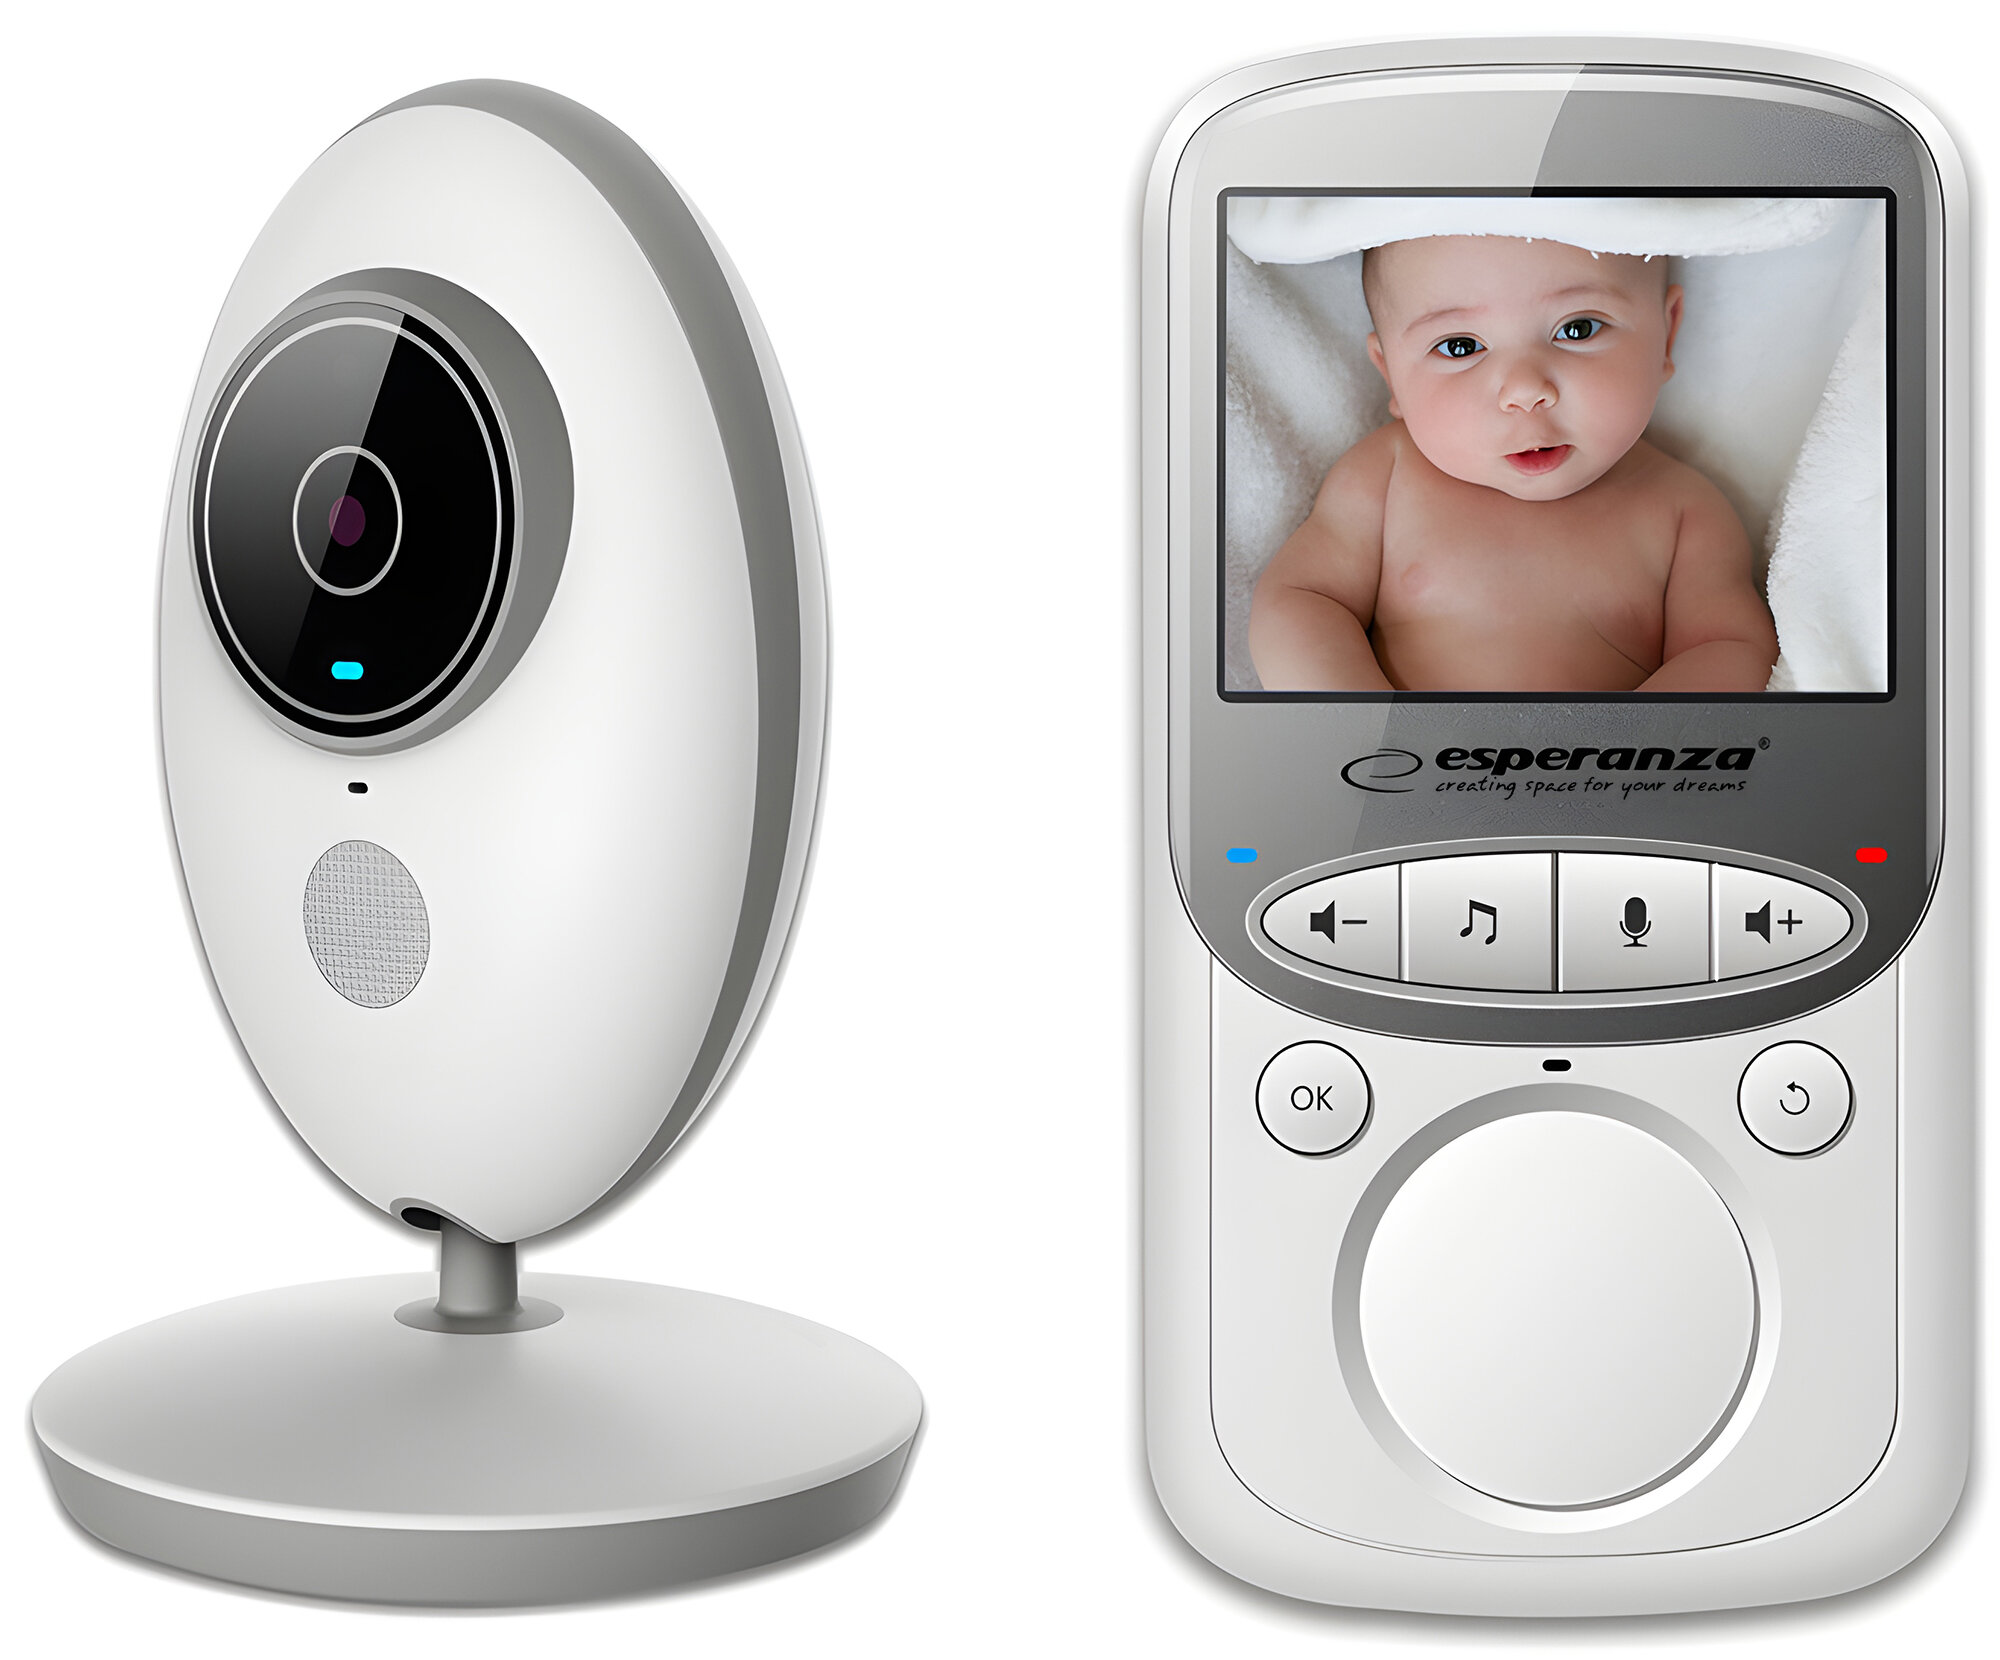 Elektroniczna niania video Zen Connect White - funkcjonalność, jakość i  łatwość obsługi dla wymagających rodziców